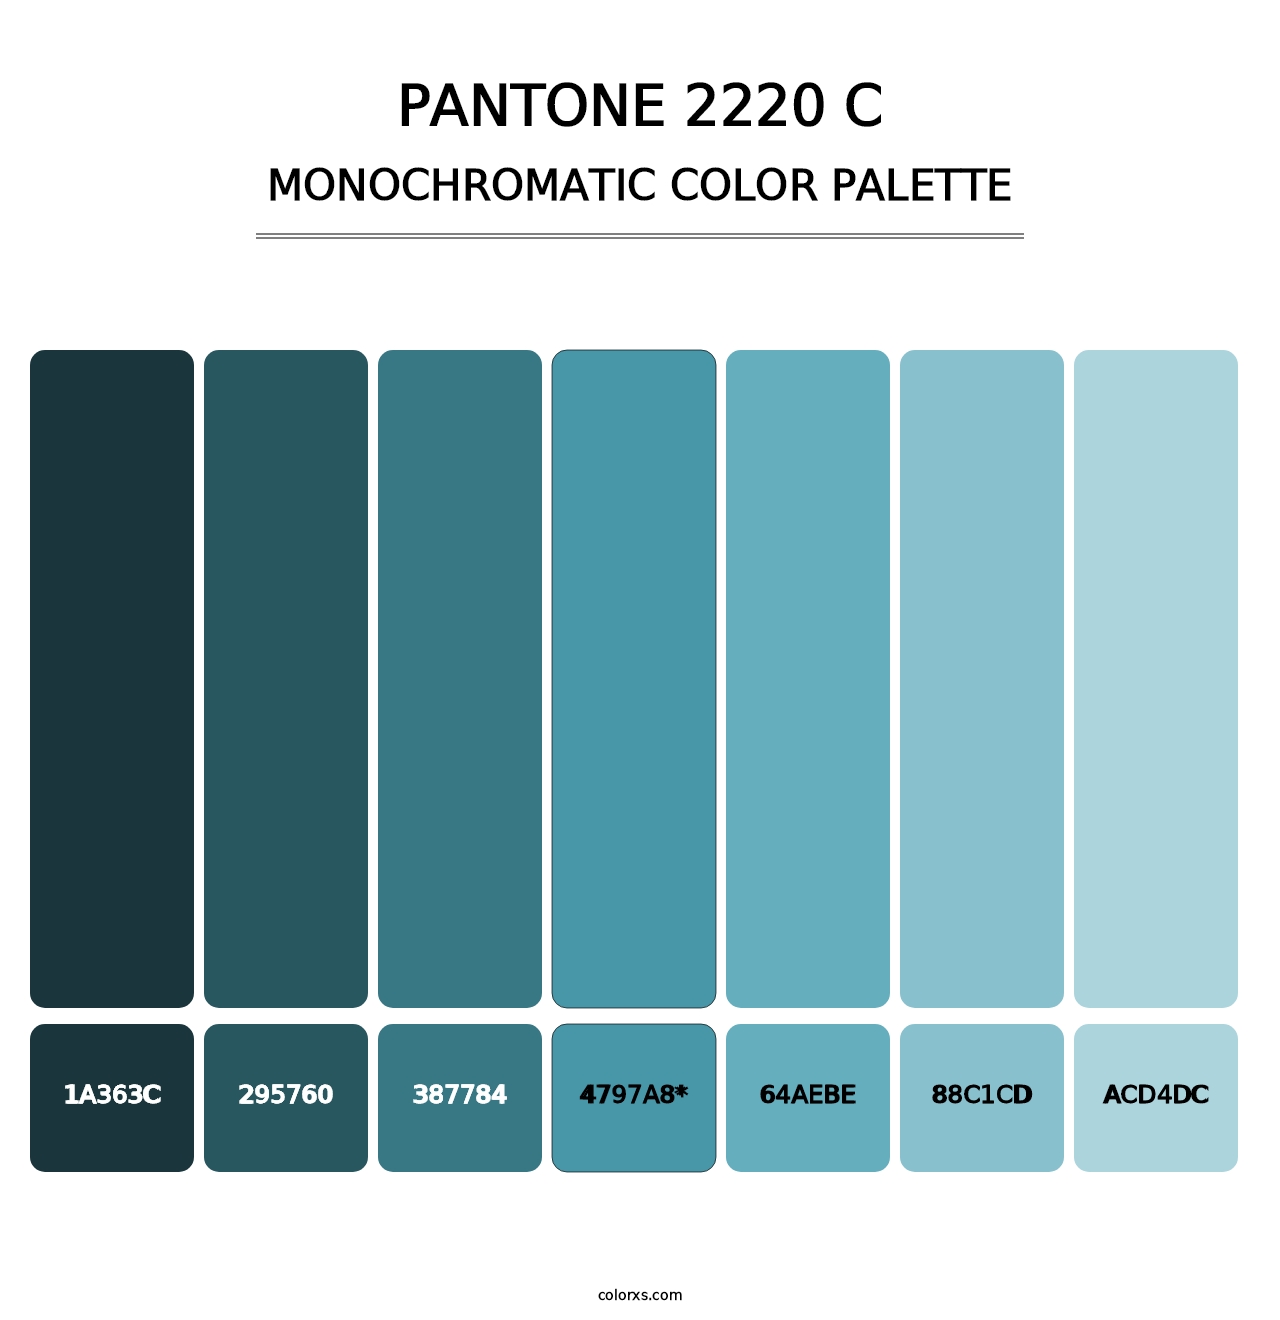 PANTONE 2220 C - Monochromatic Color Palette